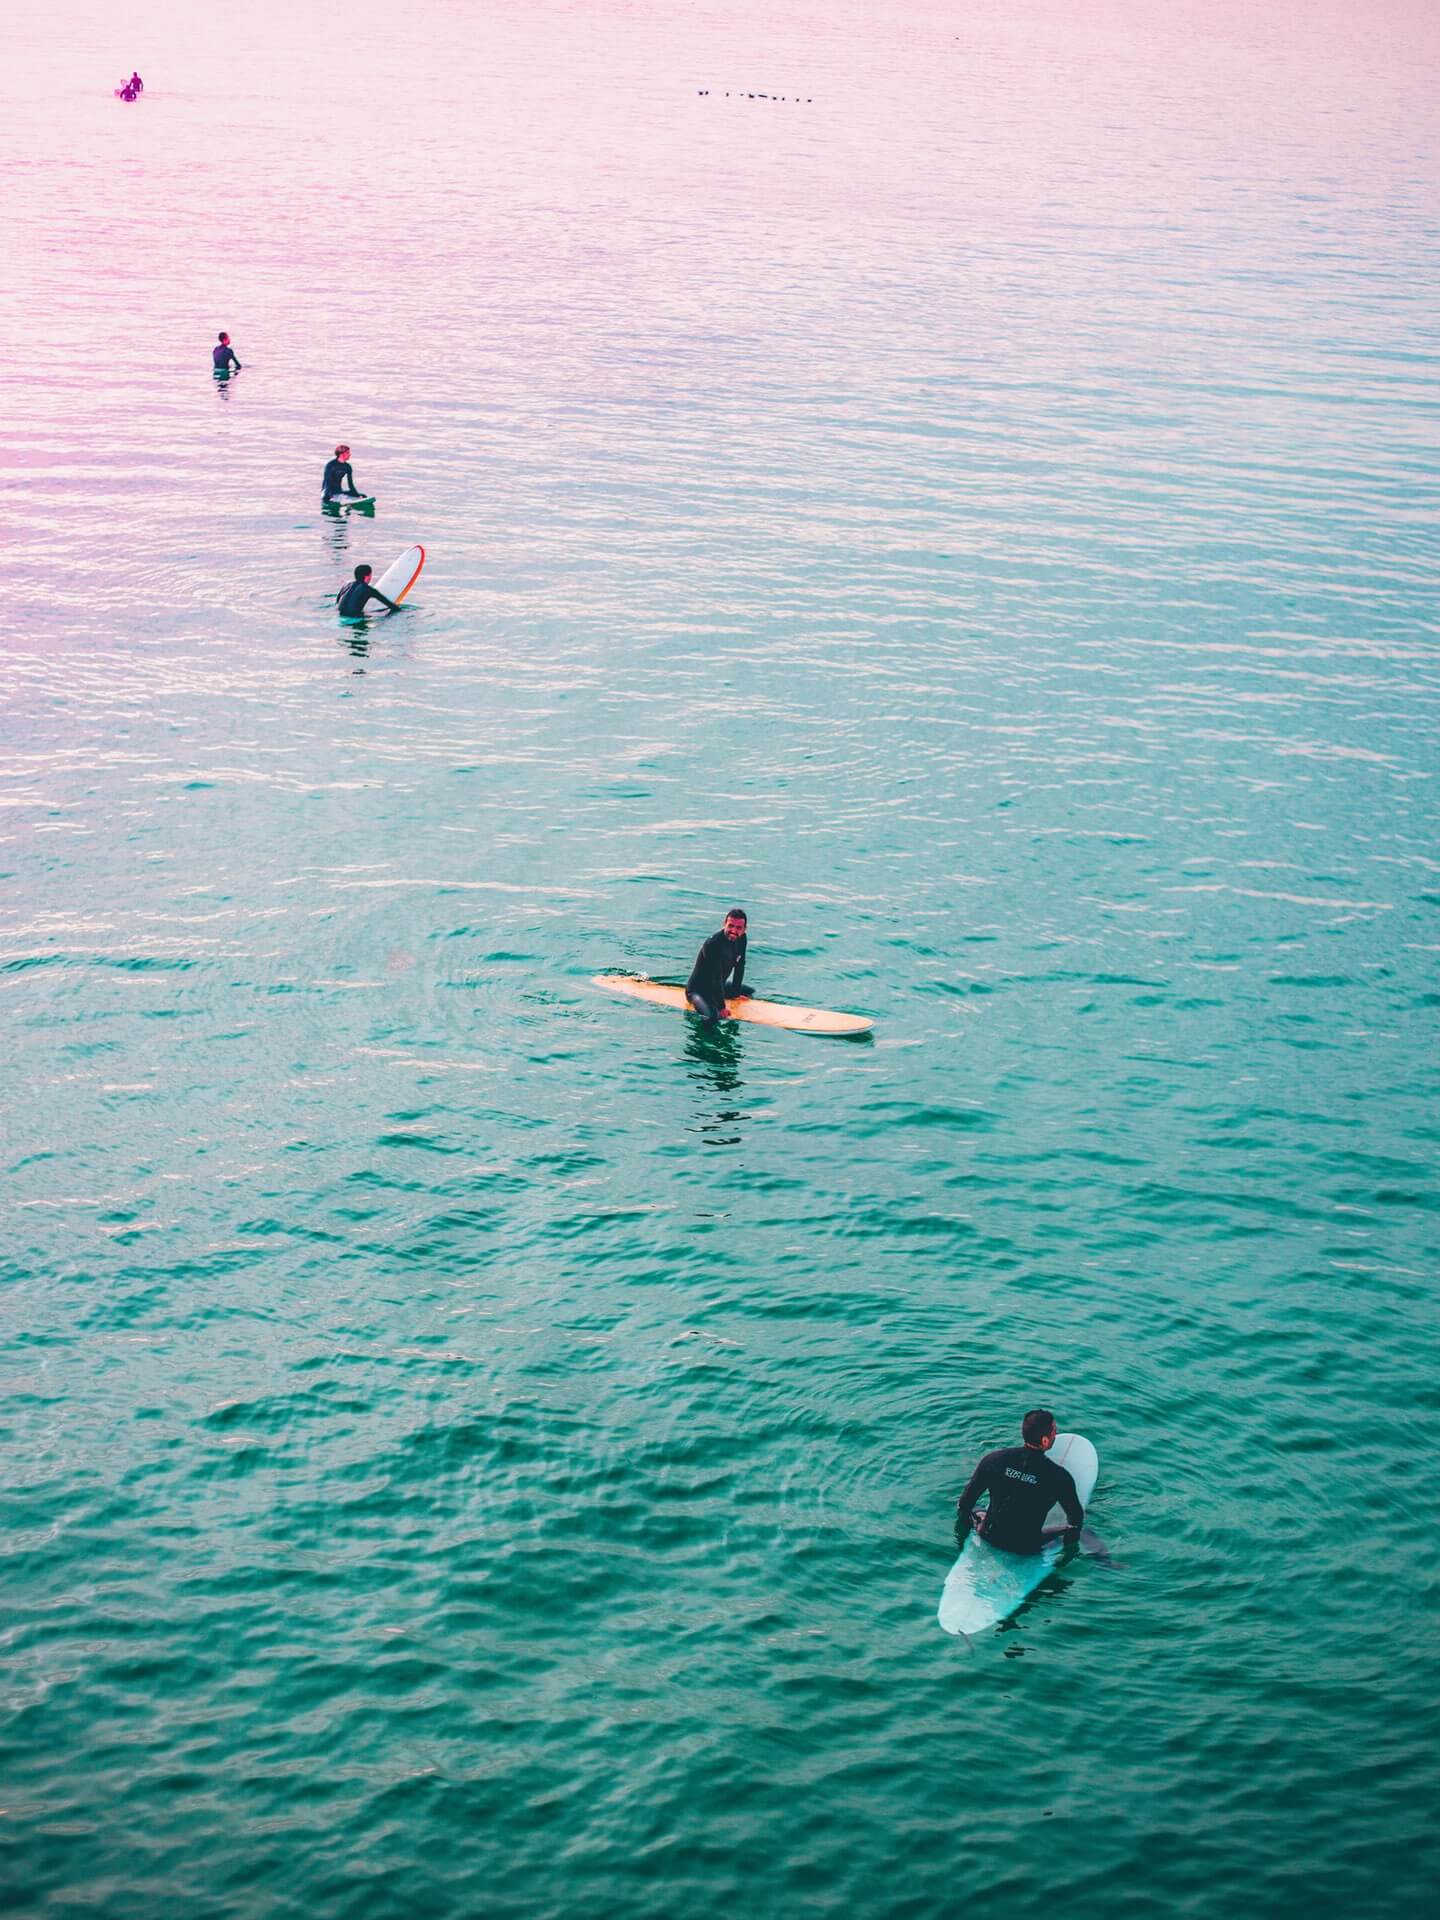 Mehrere Surfer sitzen auf ihrem Surfbrett im Wasser und warten auf die nächsten Wellen.